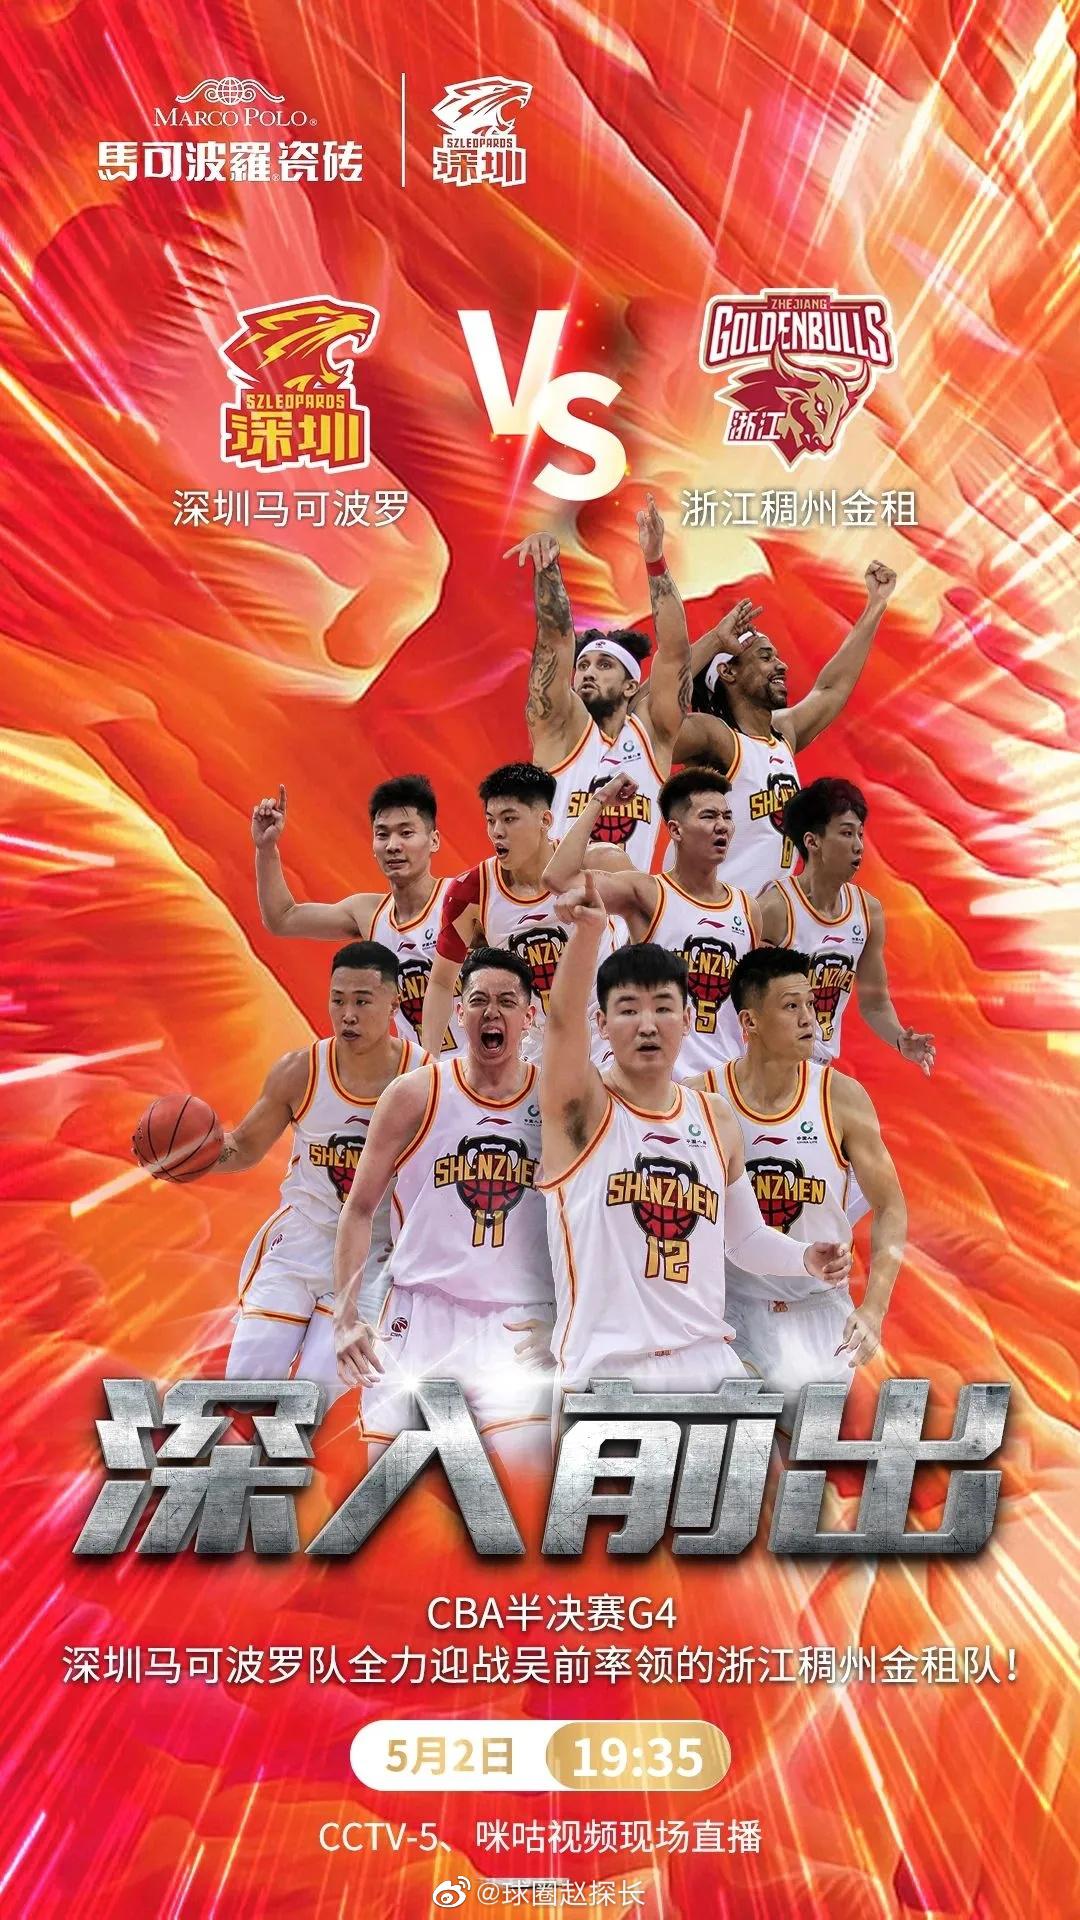 #深圳男篮vs浙江男篮# g4今晚开打，两队均发布了赛前海报，深圳男篮的主题是“(1)